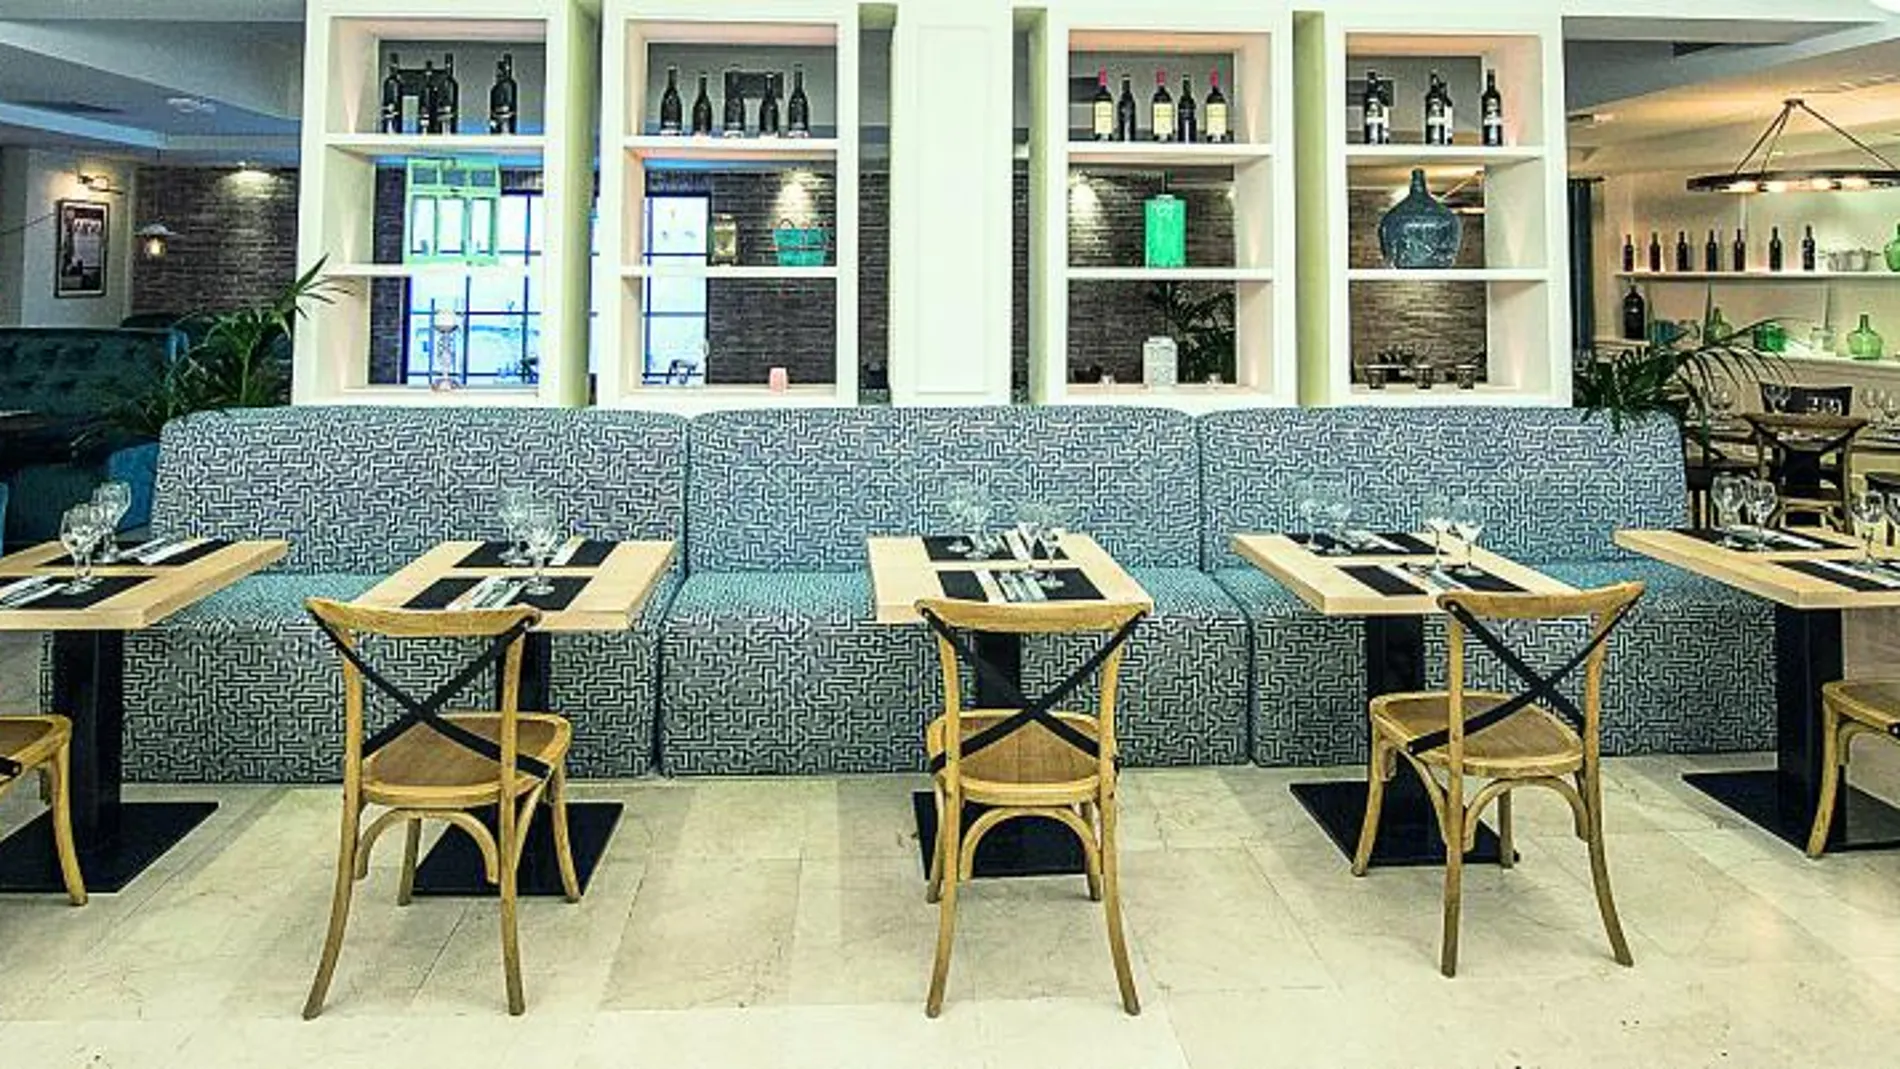 El restaurante se inauguró en 2009 con una oferta gastronómica basada en seis o siete platos de pasta italiana.